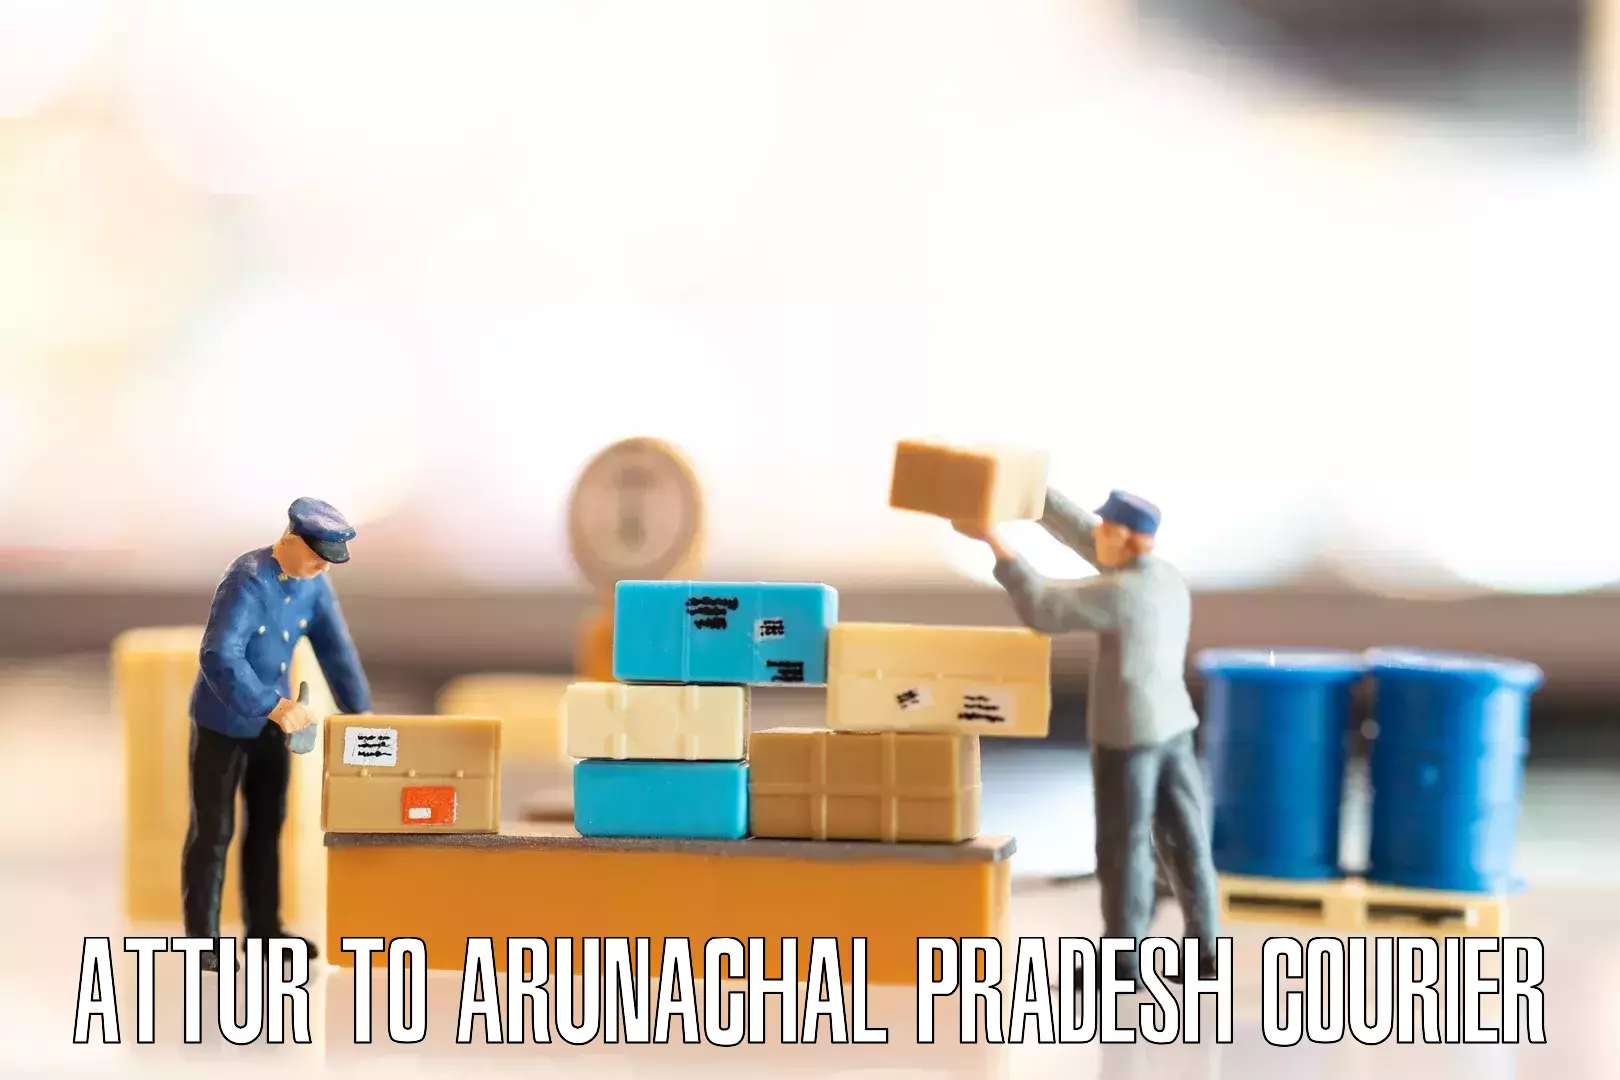 Furniture transport specialists Attur to Arunachal Pradesh